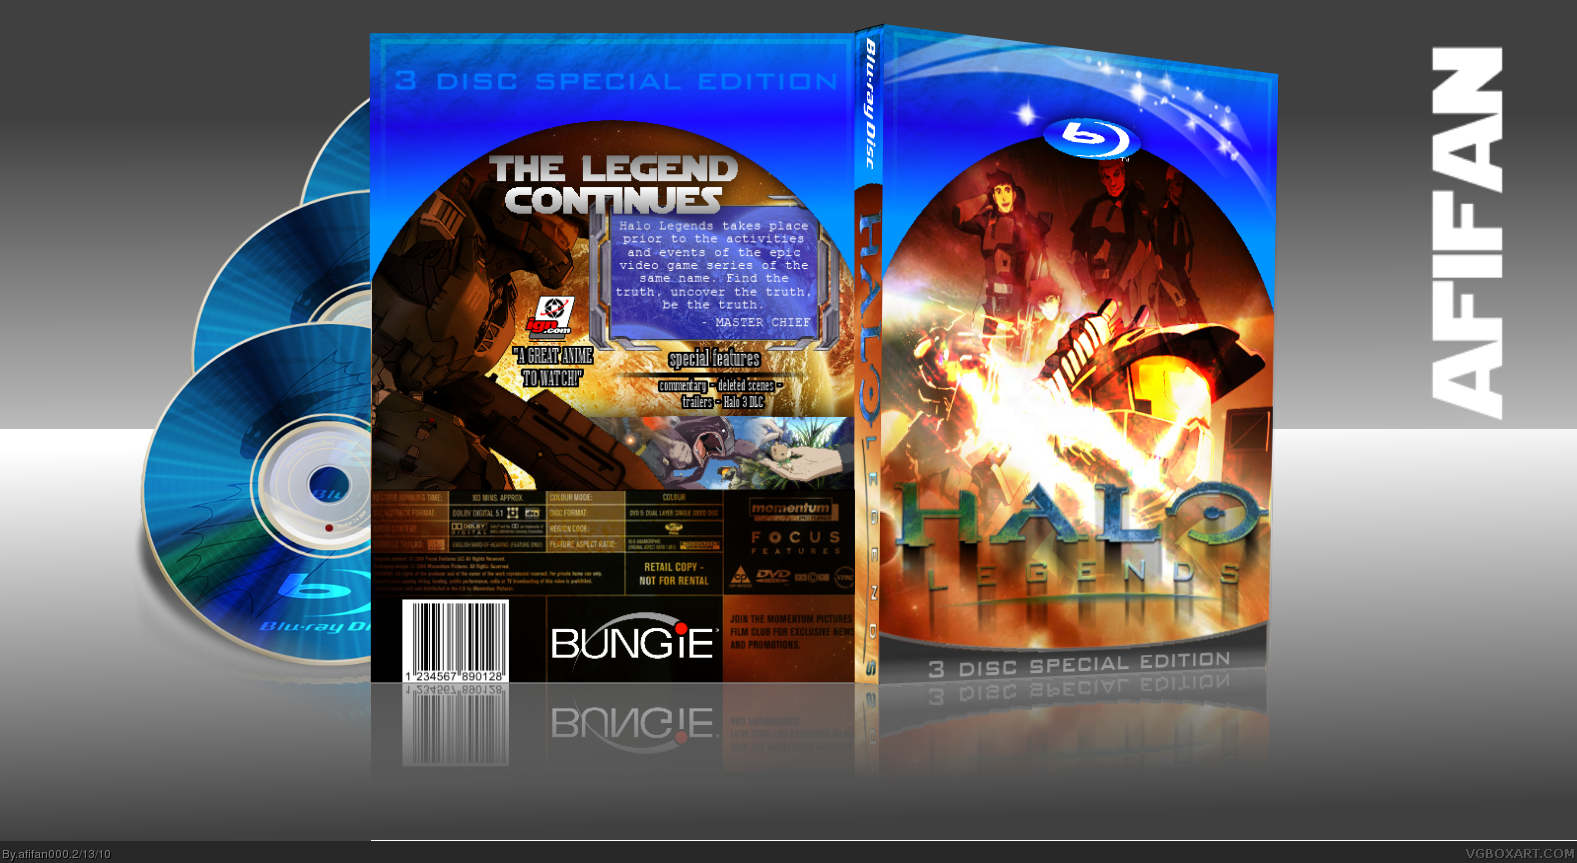 Halo Legends box cover